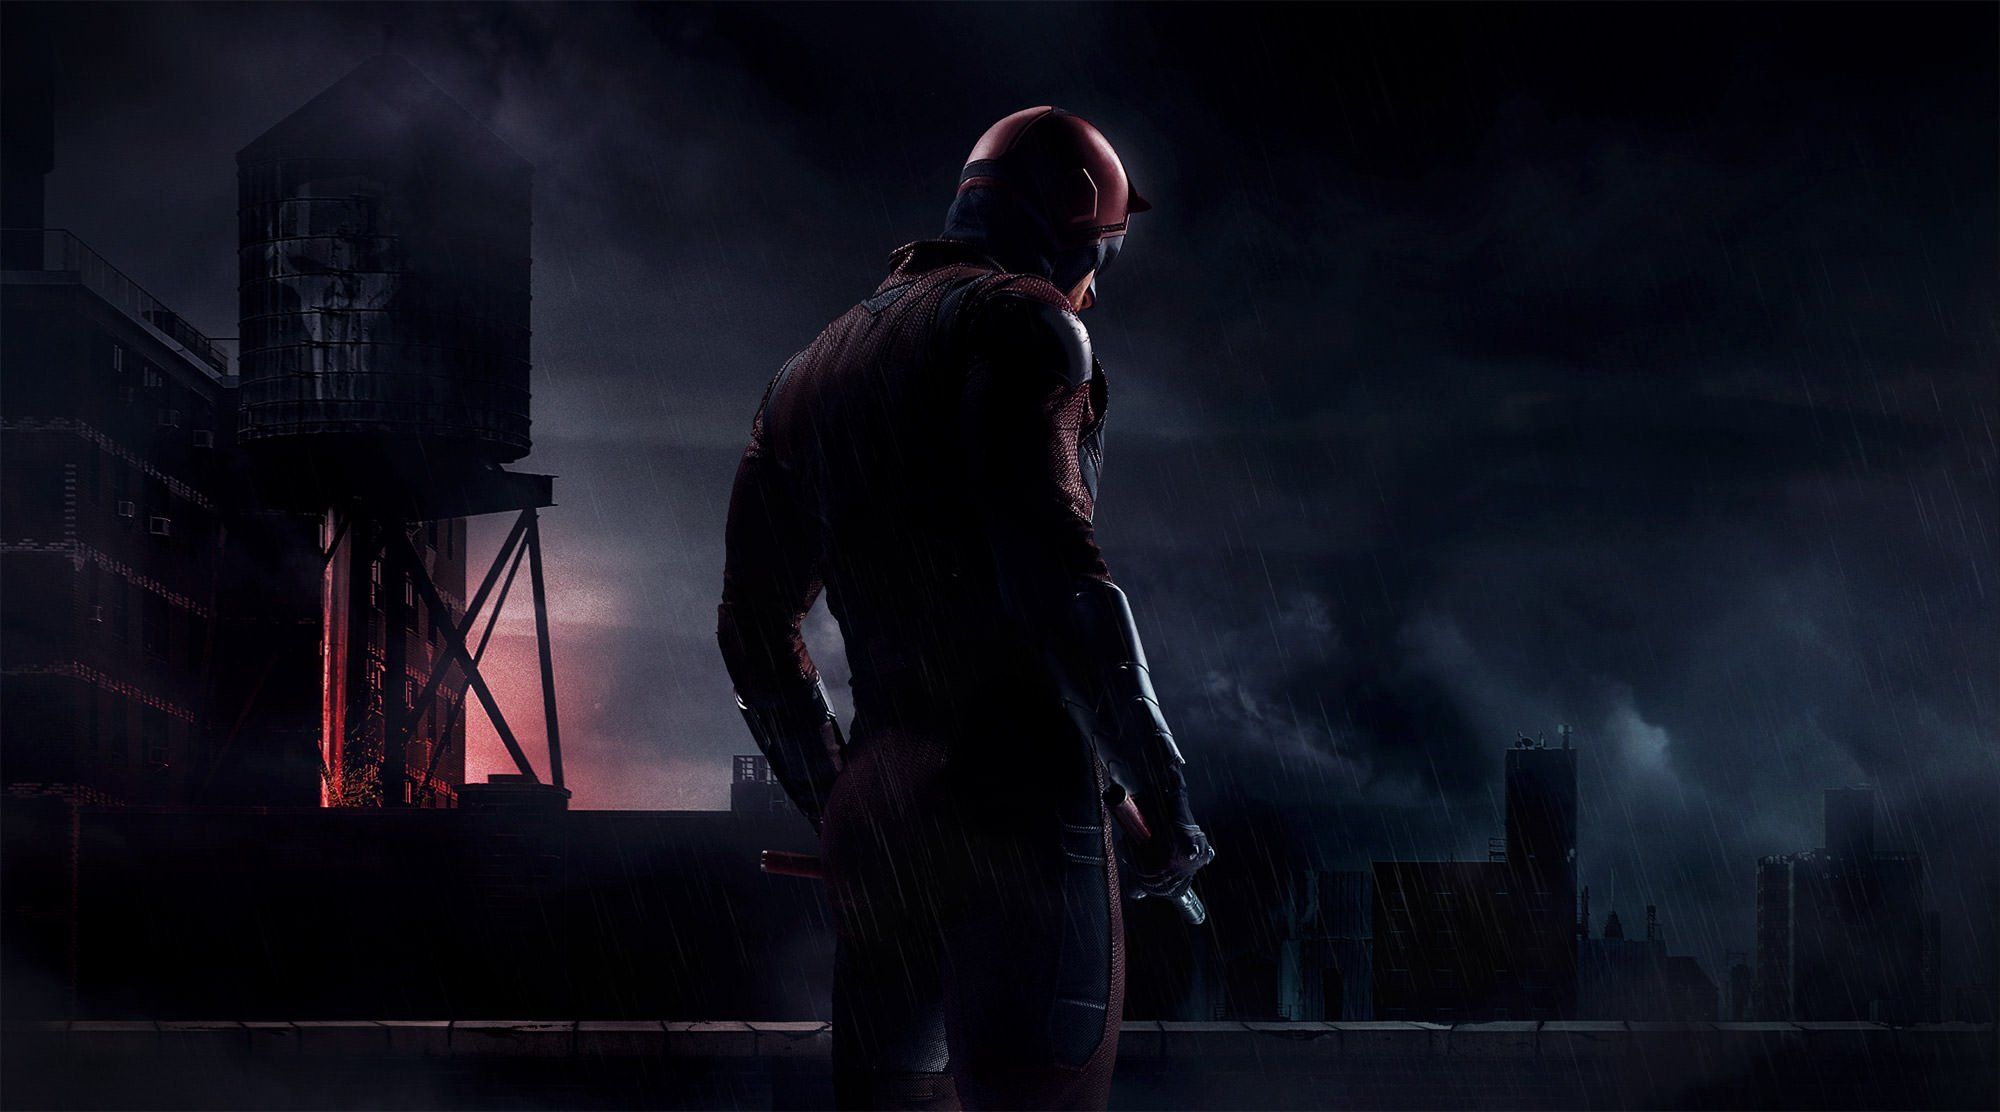 Ormai è ufficiale, Daredevil: Born Again sarà un sequel prodotto dai Marvel Studios. Proseguirà la storia cominciata su Netflix